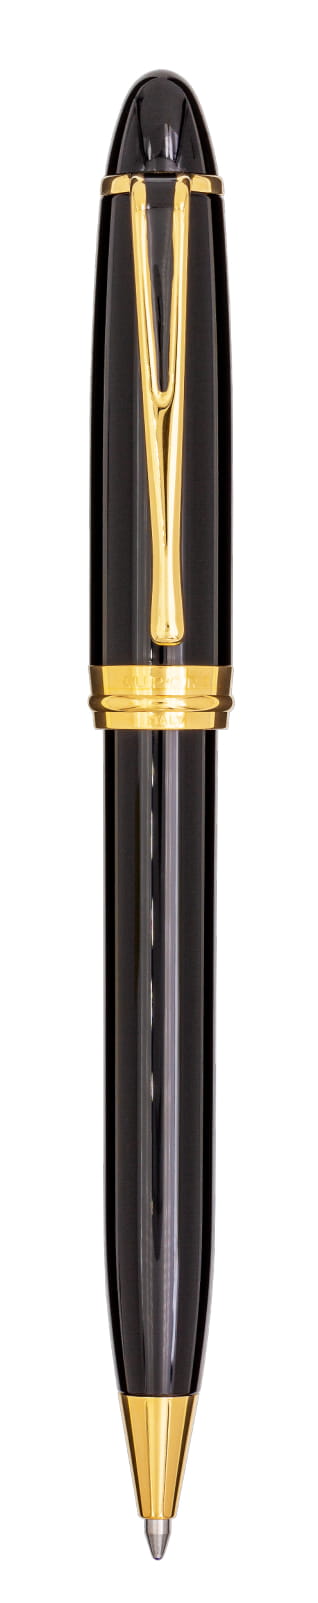 Aurora Ipsilon Deluxe Black with Gold Trims Ballpoint Pen